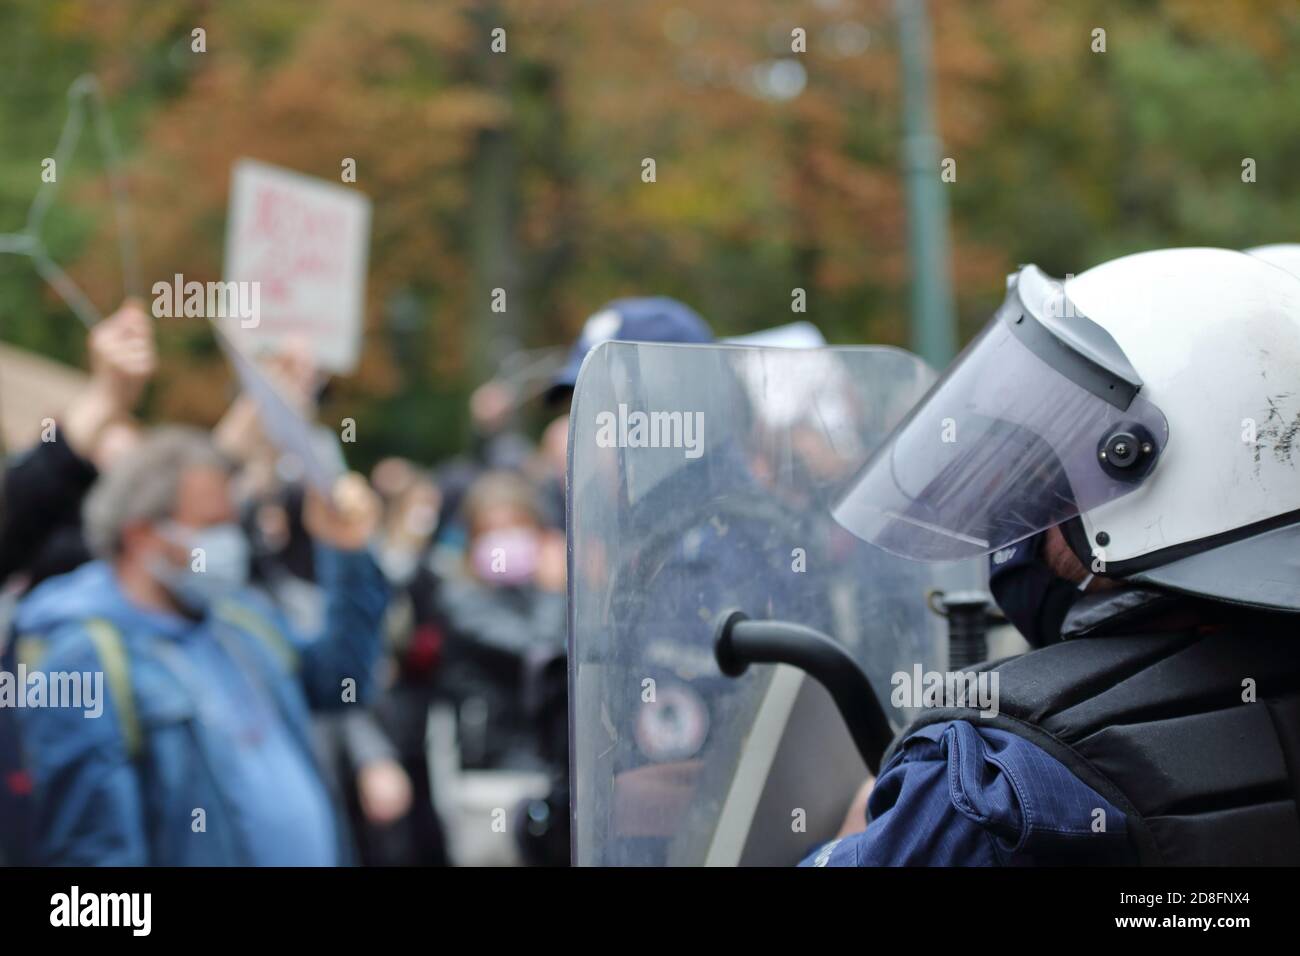 La polizia ha dimostrato di essere sicura durante la manifestazione anti-governo a Cracovia, ottobre 25 2020 Foto Stock